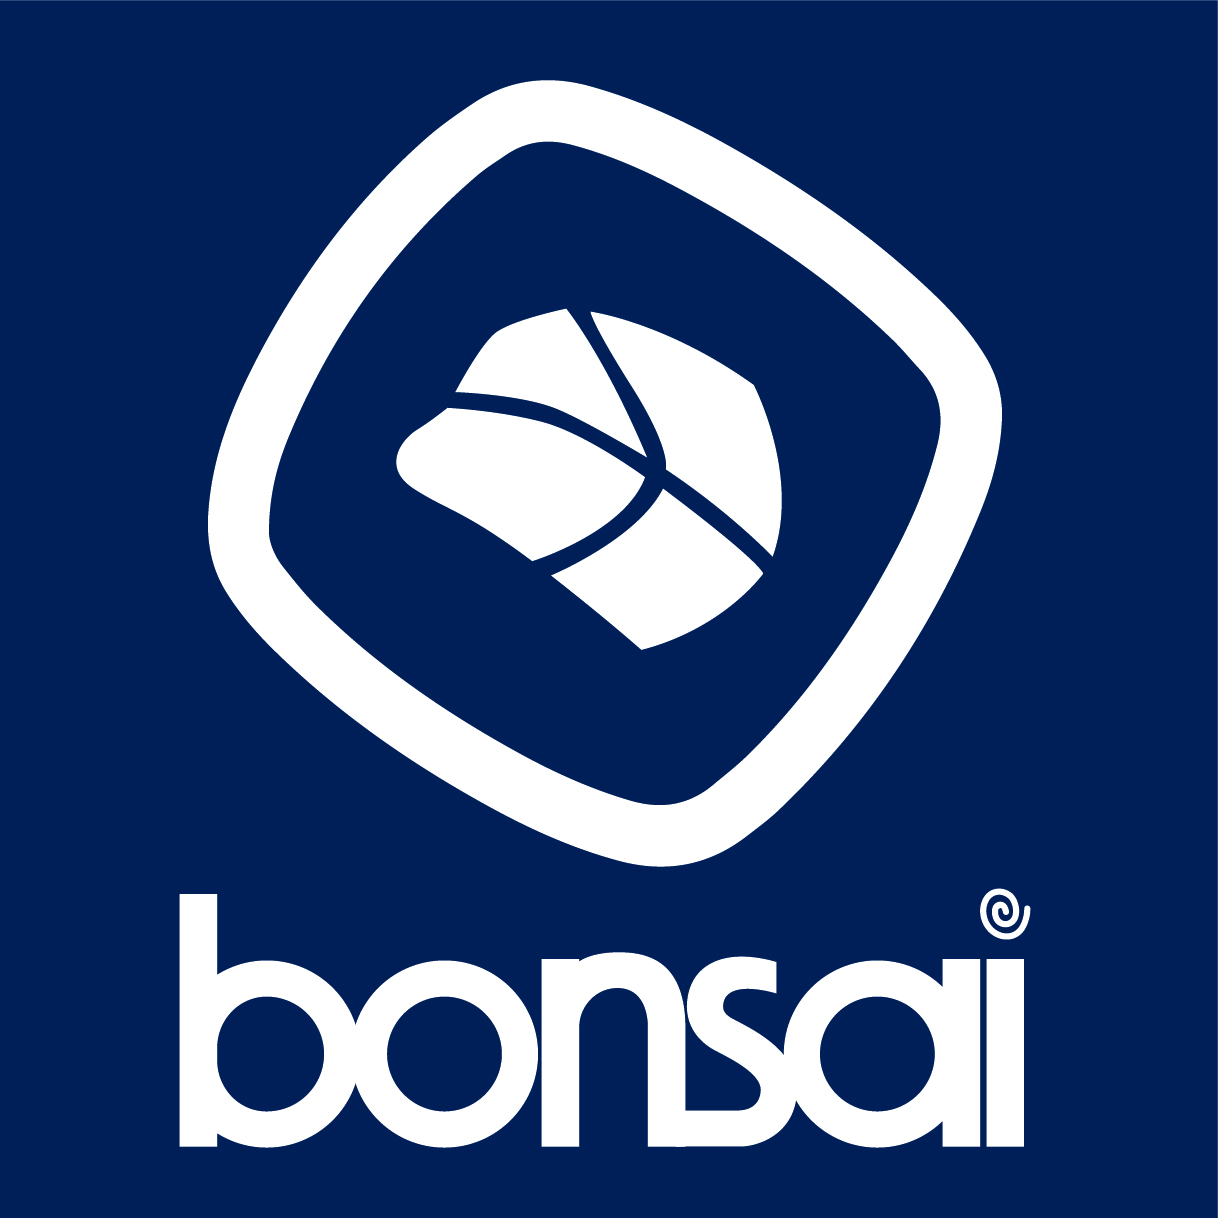 Bonsai Sushi